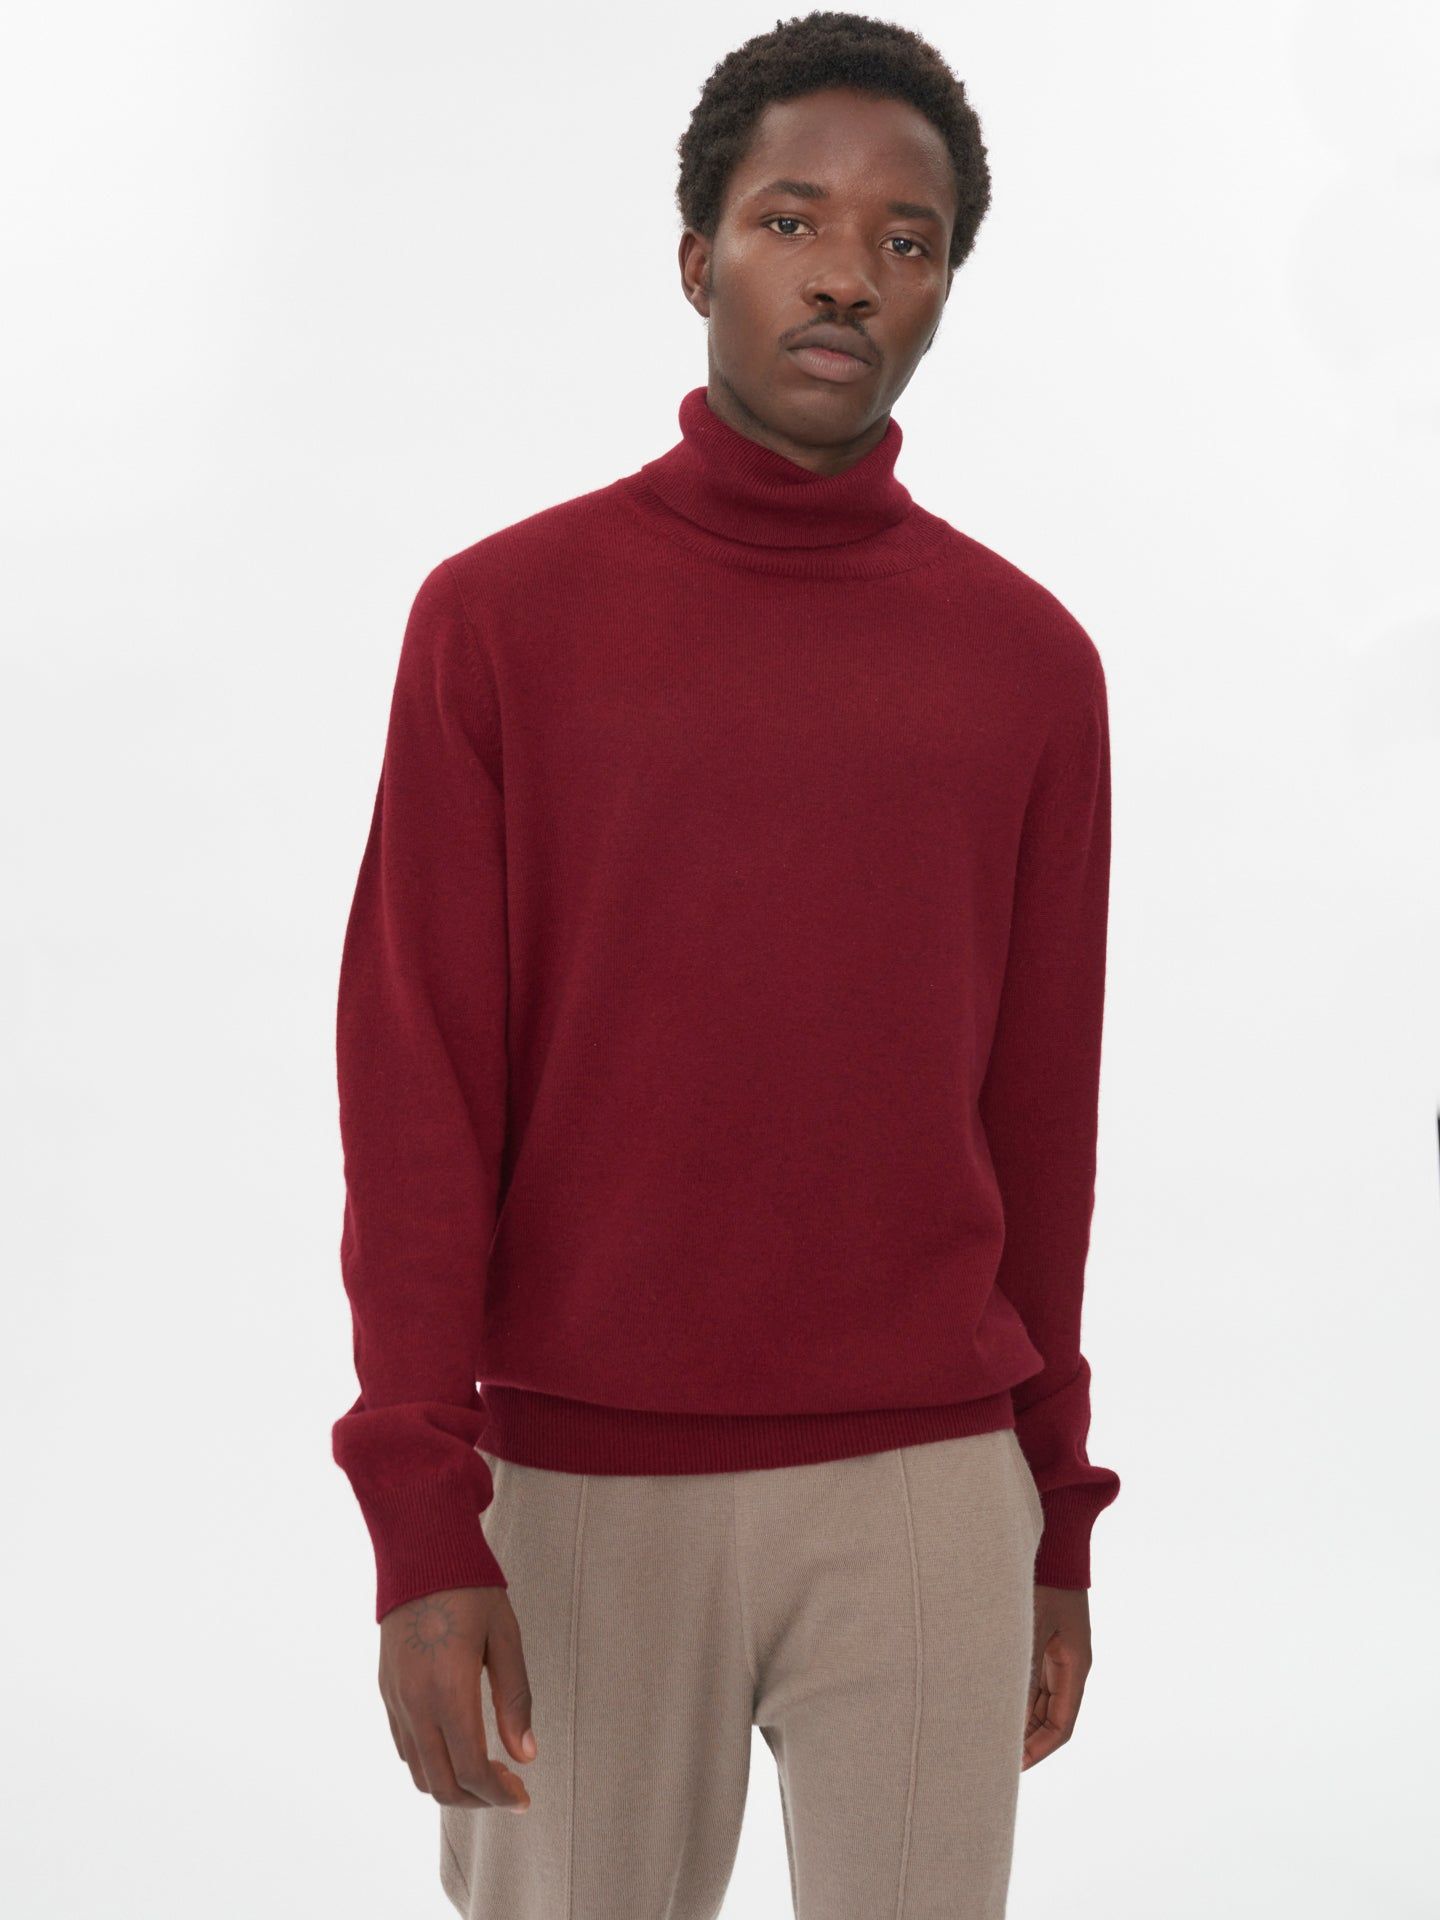 Men's Cashmere Turtle Neck Sweater Bordeaux - Gobi Cashmere